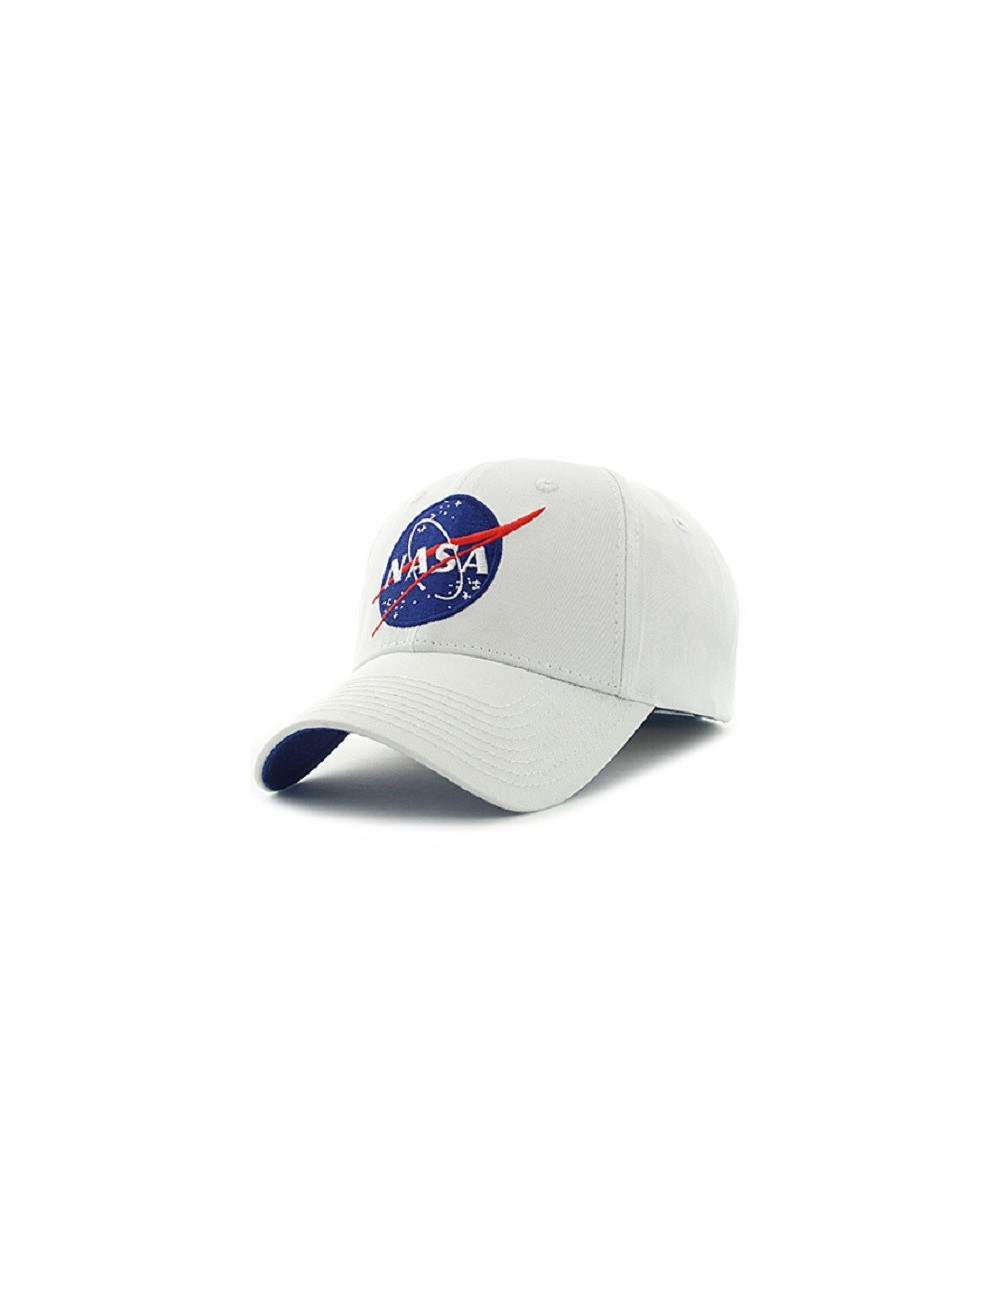 Casquette NASA blanche